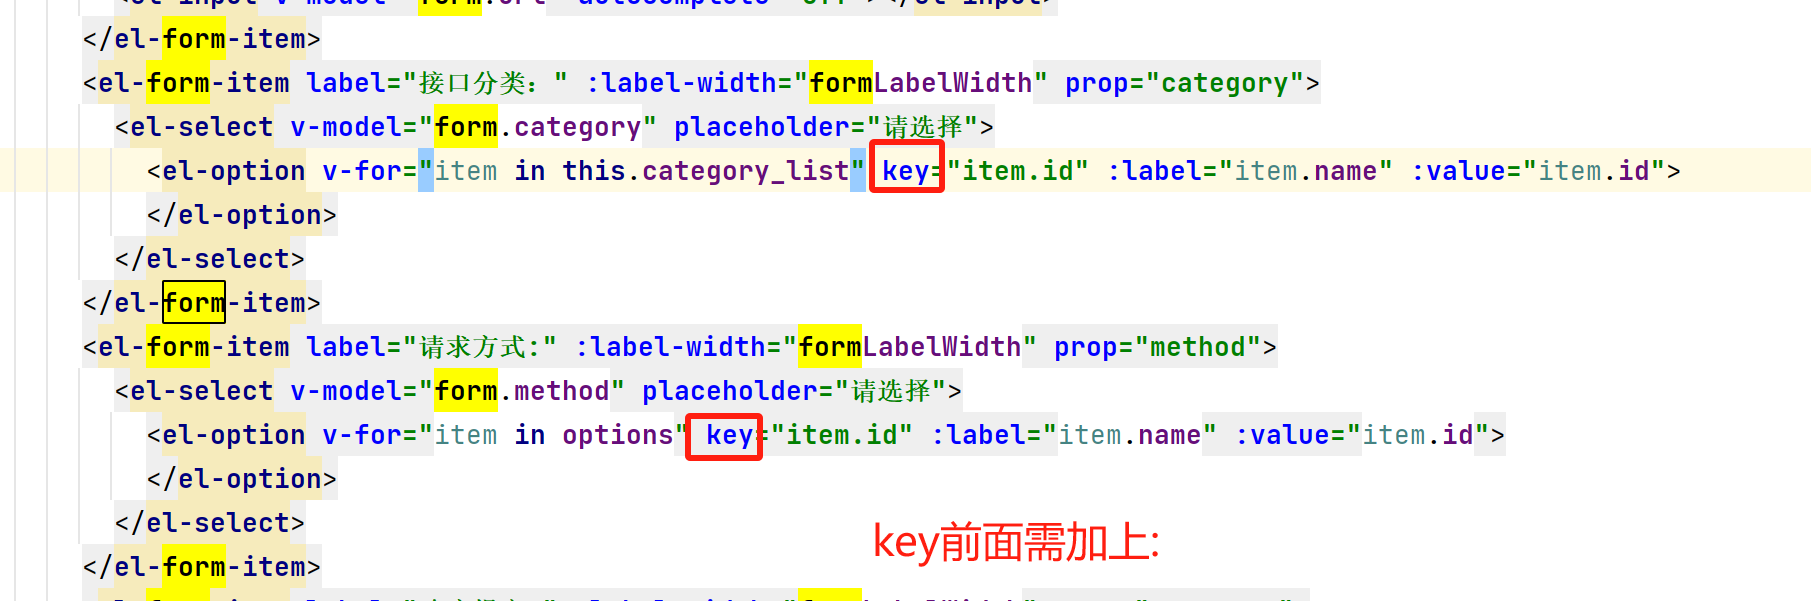 [Vue warn]: Duplicate keys detected: item.id. This may cause an update error.